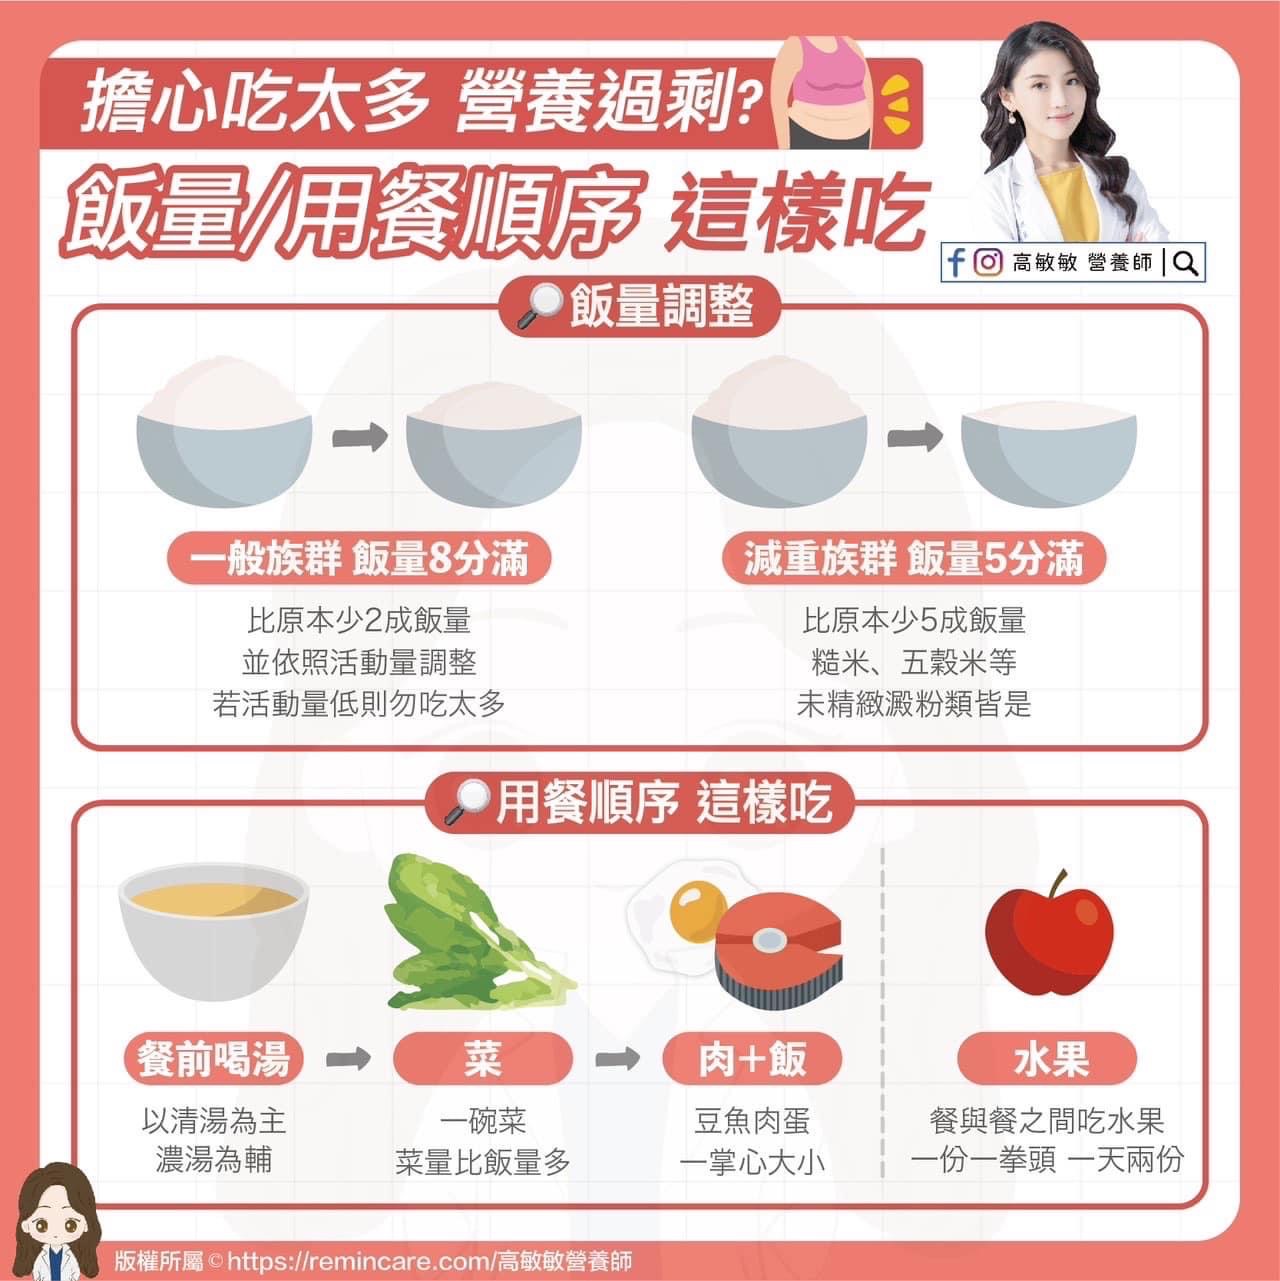 用餐順序這樣吃，提高代謝不易胖 - 台北郵報 | The Taipei Post